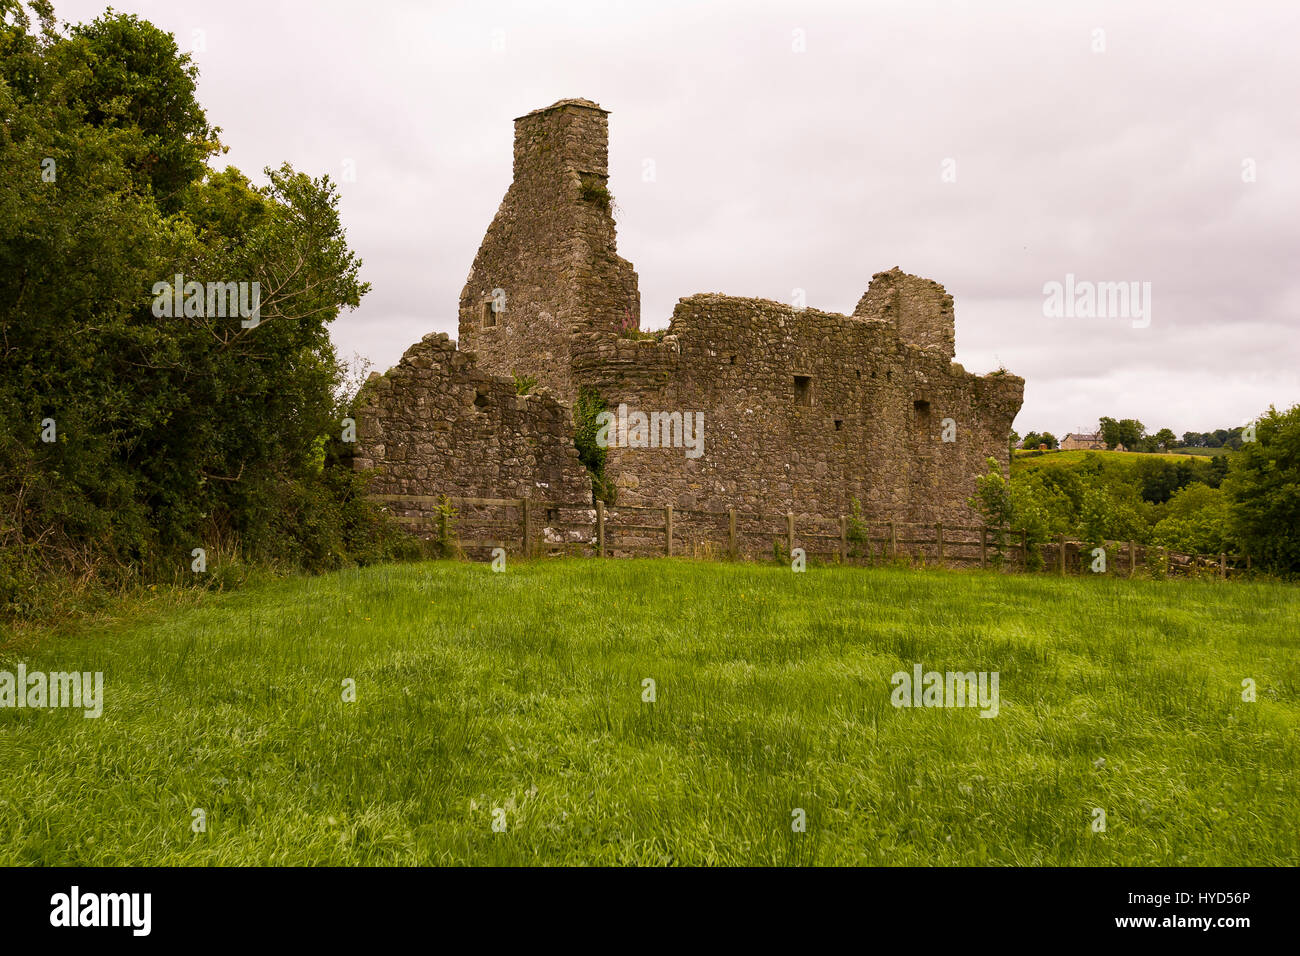 TULLY CASTLE, IRLANDA DEL NORD - rovine del castello di Tully, vicino a Enniskillen, sulla parte inferiore del Lough Erne. Tully Castello, costruito all'inizio del seicento, in County Fermanagh, nei pressi del villaggio di Blaney. Foto Stock